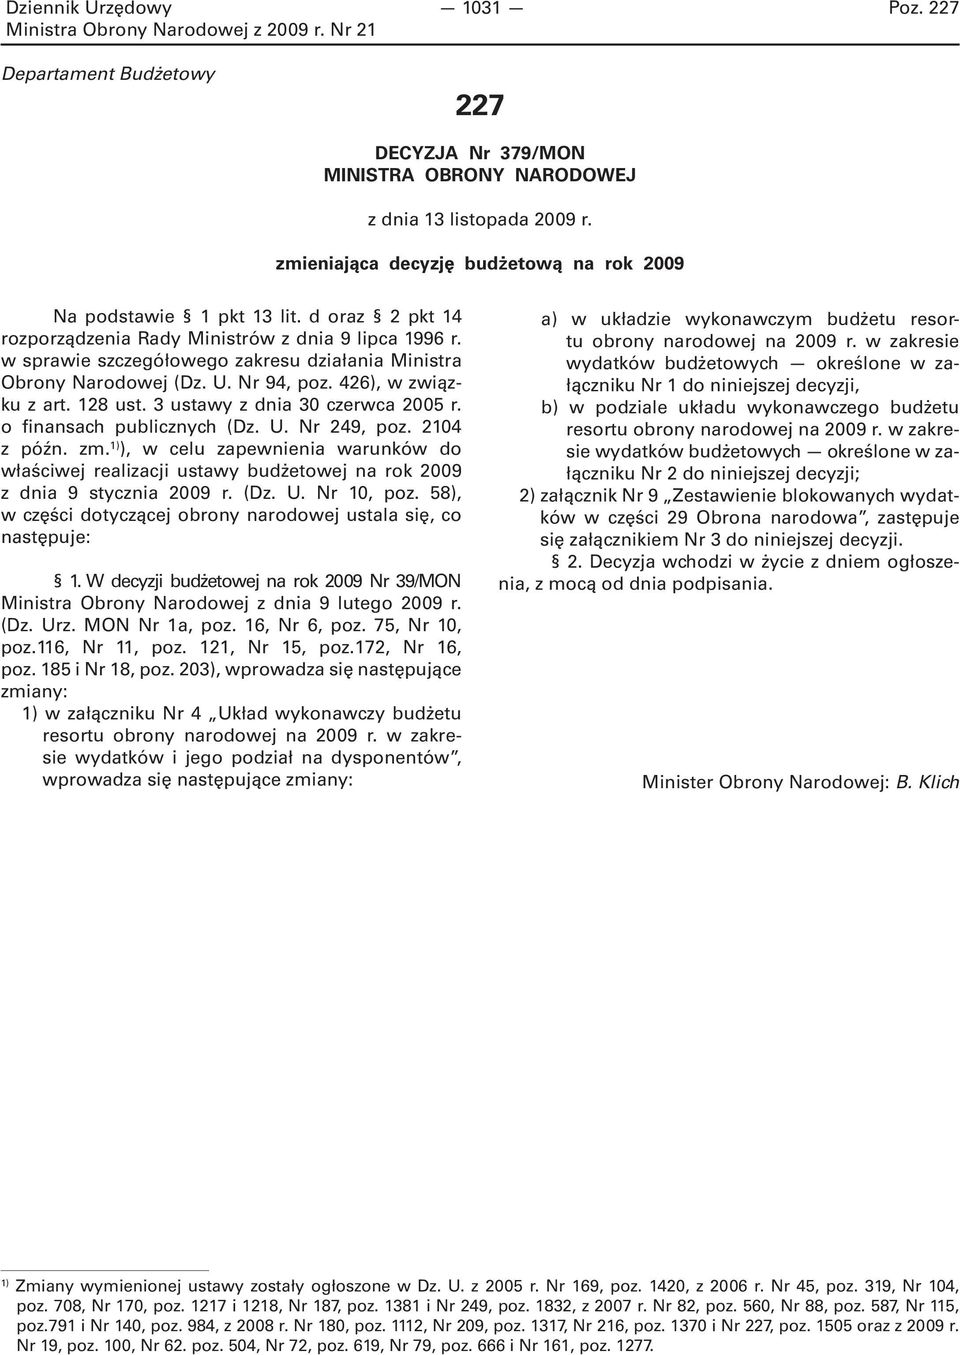 3 ustawy z dnia 30 czerwca 2005 r. o finansach publicznych (Dz. U. Nr 249, poz. 2104 z późn. zm.